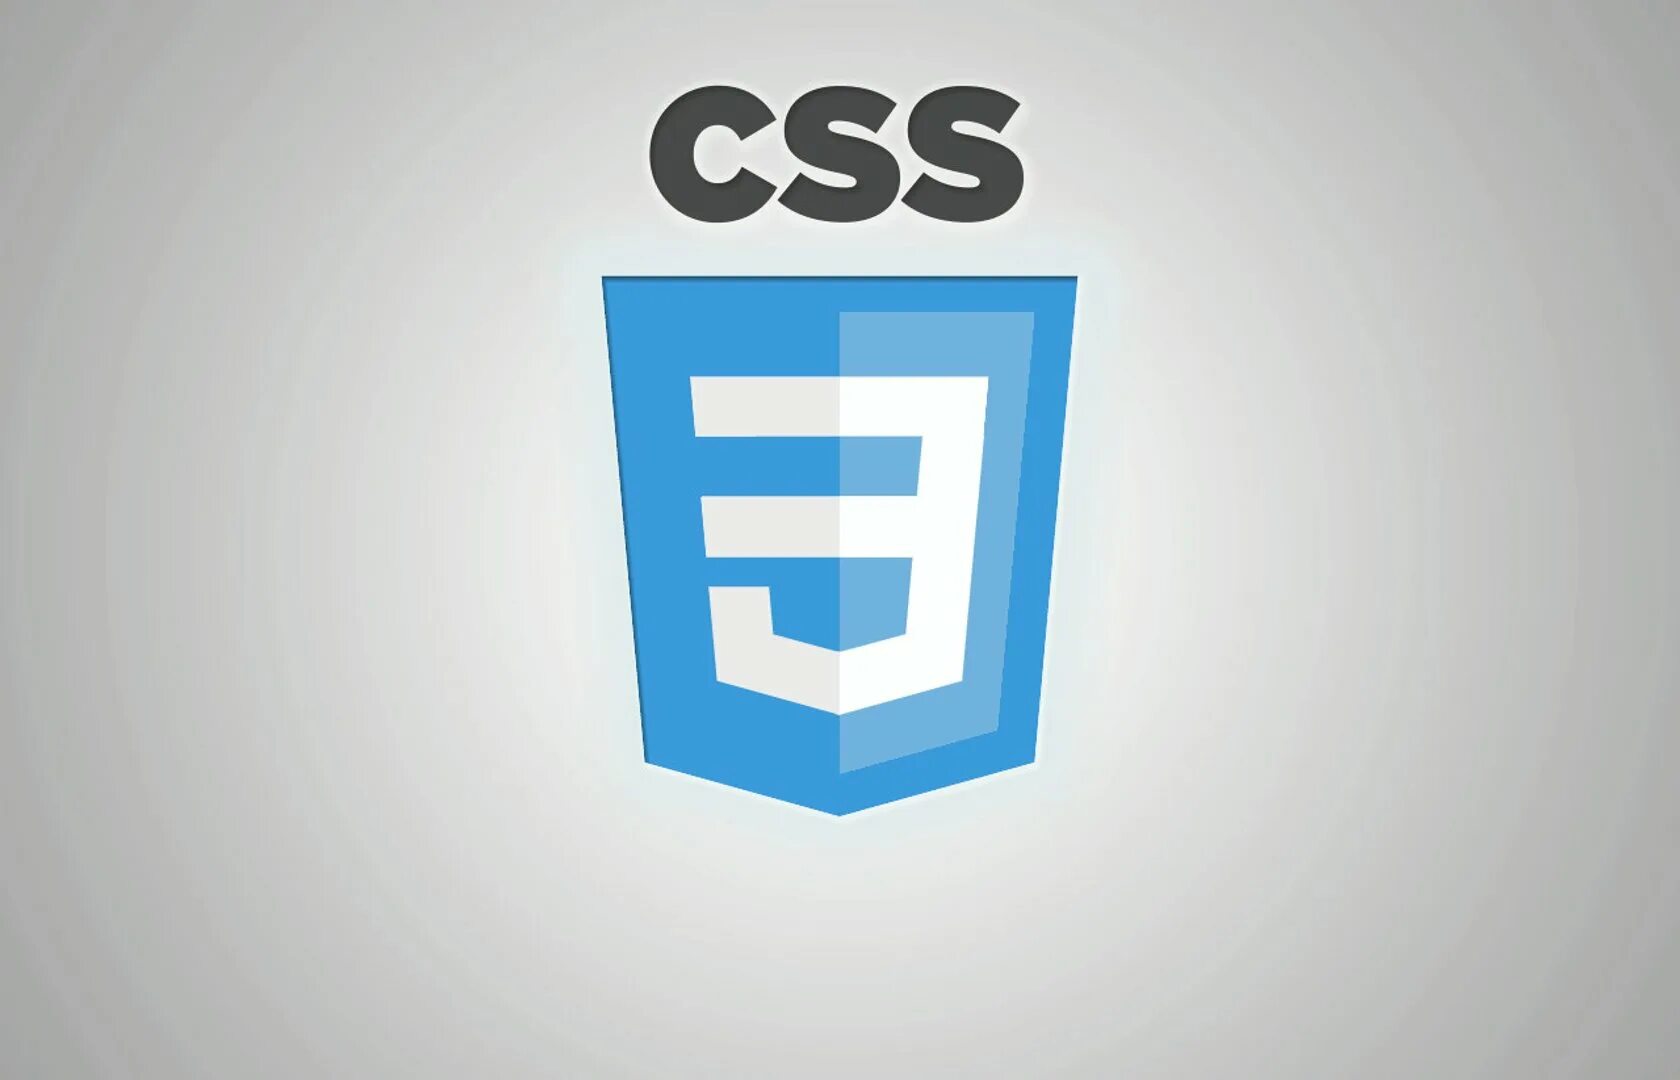 Css3 логотип. Значок css3. CSS эмблема. CSS лого. Rounded html